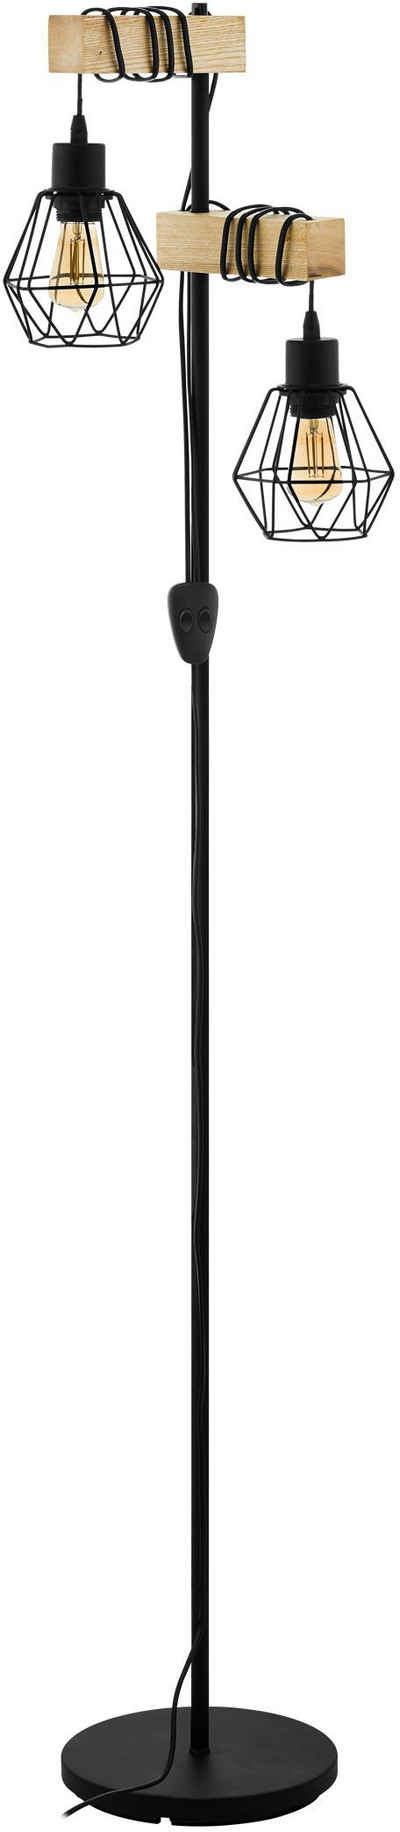 EGLO Stehlampe »TOWNSHEND 5«, schwarz / L40 x H166,5 x B25 cm / exkl. 2 x E27 (je max. 60W) / Stehlampe - Retro - Vintage - Lampe mit Holz - Schlafzimmerlampe - Wohnzimmerlampe - Stehleuchte - Holzleuchte - Leselampe